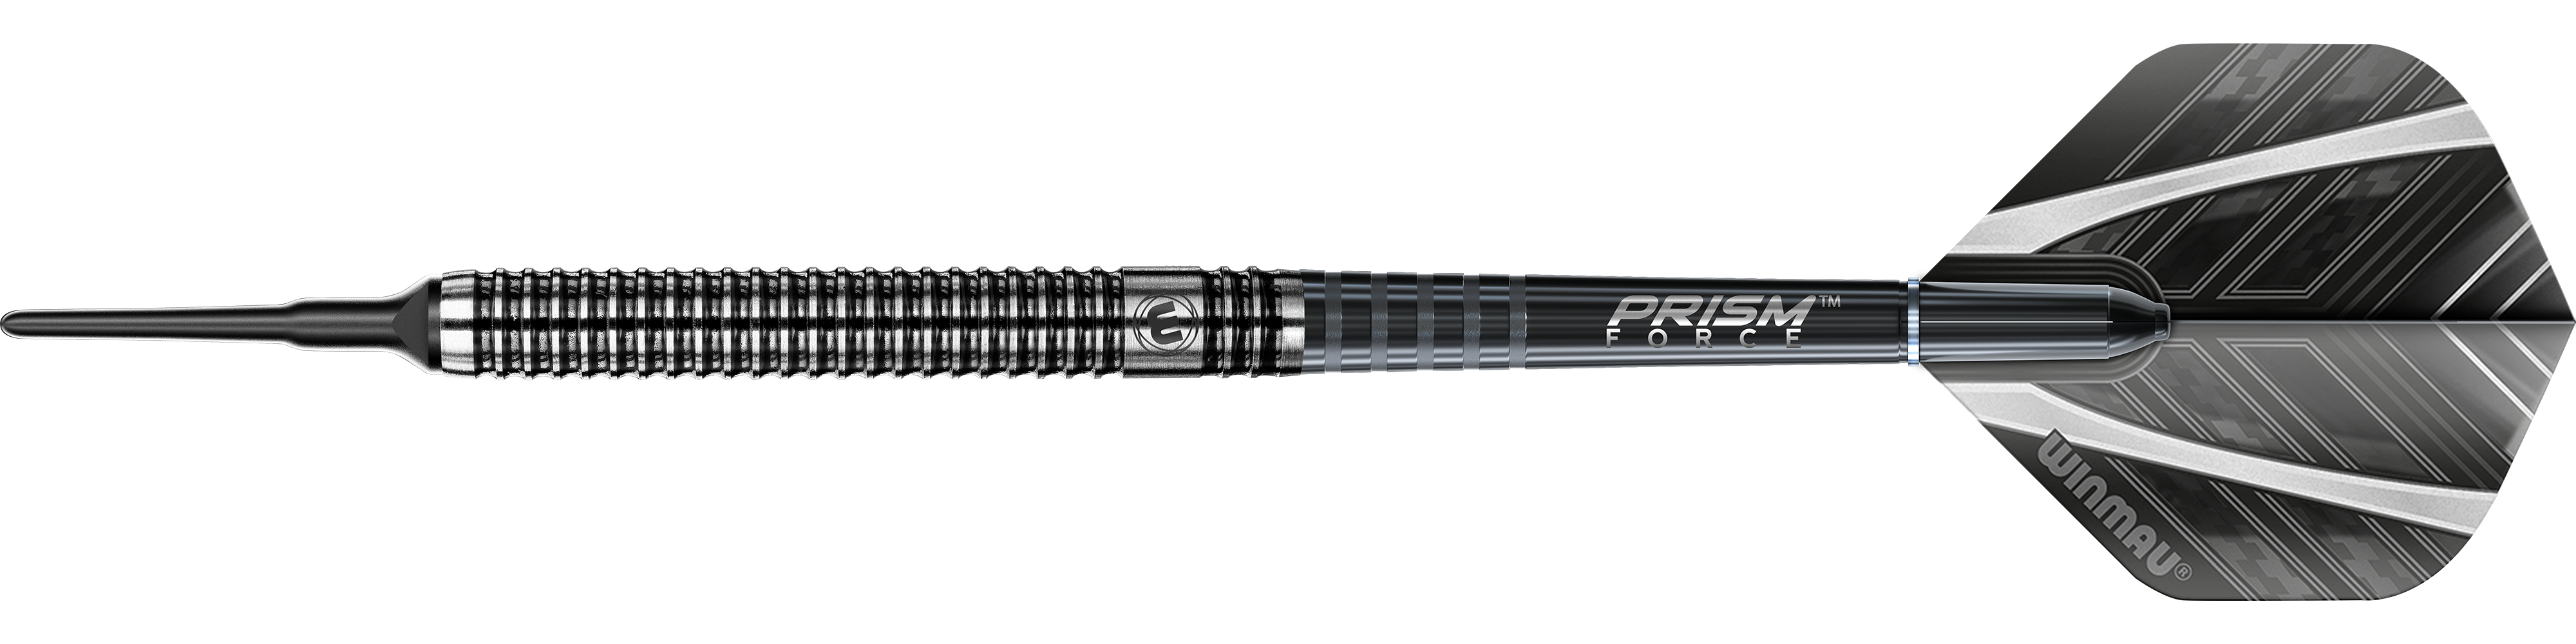 Winmau Blackout Tungsten soft darts